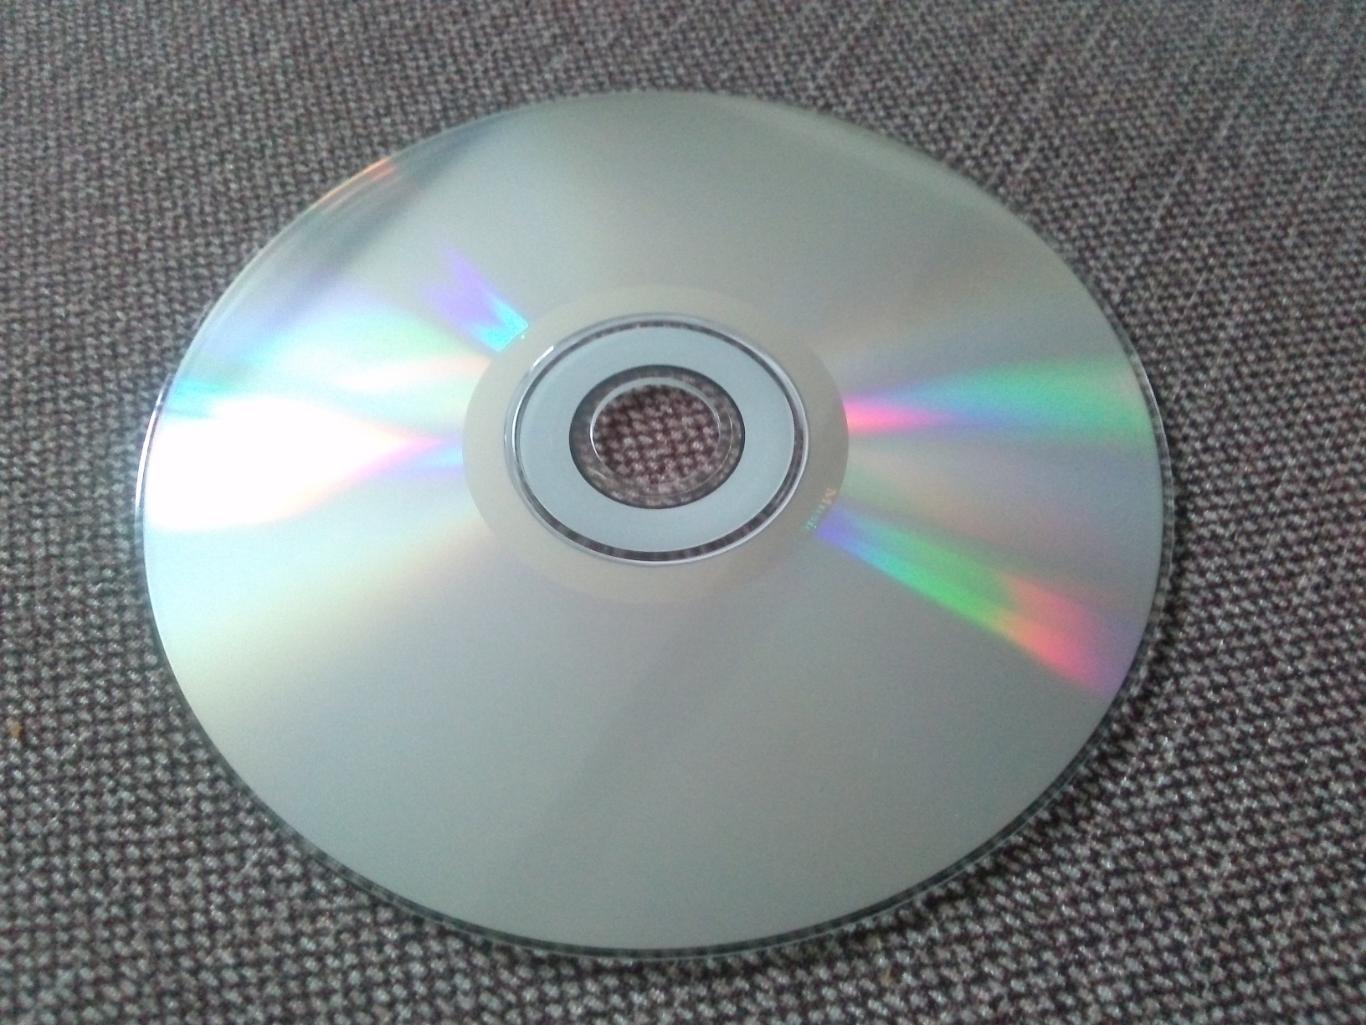 MP - 3 CD диск :Pink2000 - 2006 гг. (10 альбомов + 4 видео) лицензия Рок 3